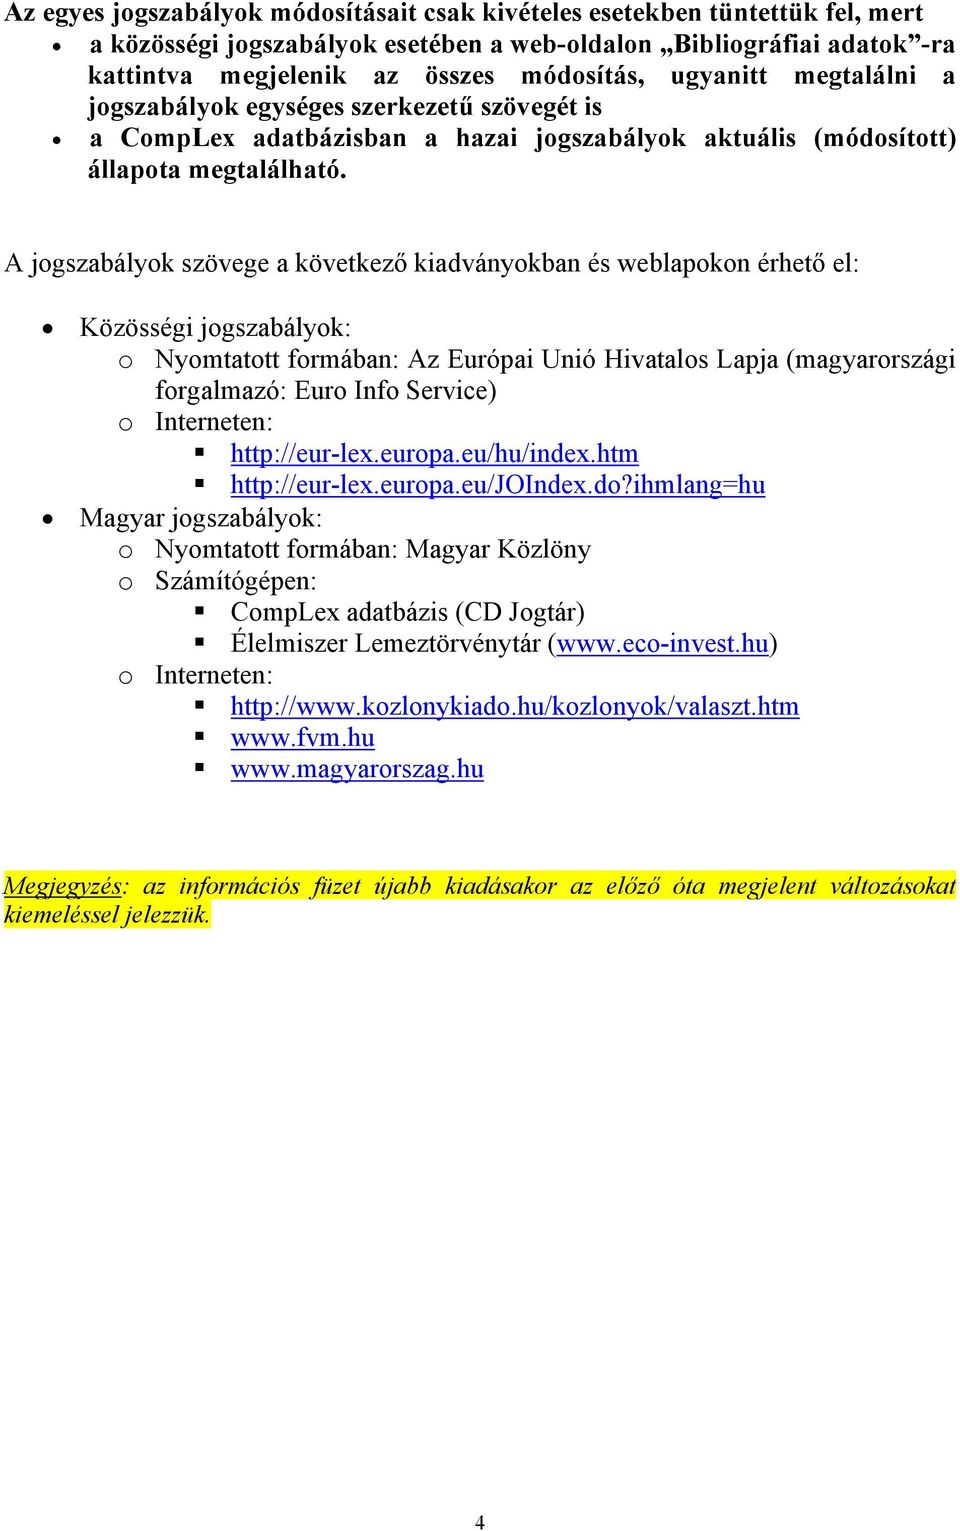 A jogszabályok szövege a következő kiadványokban és weblapokon érhető el: Közösségi jogszabályok: o Nyomtatott formában: Az Európai Unió Hivatalos Lapja (magyarországi forgalmazó: Euro Info Service)